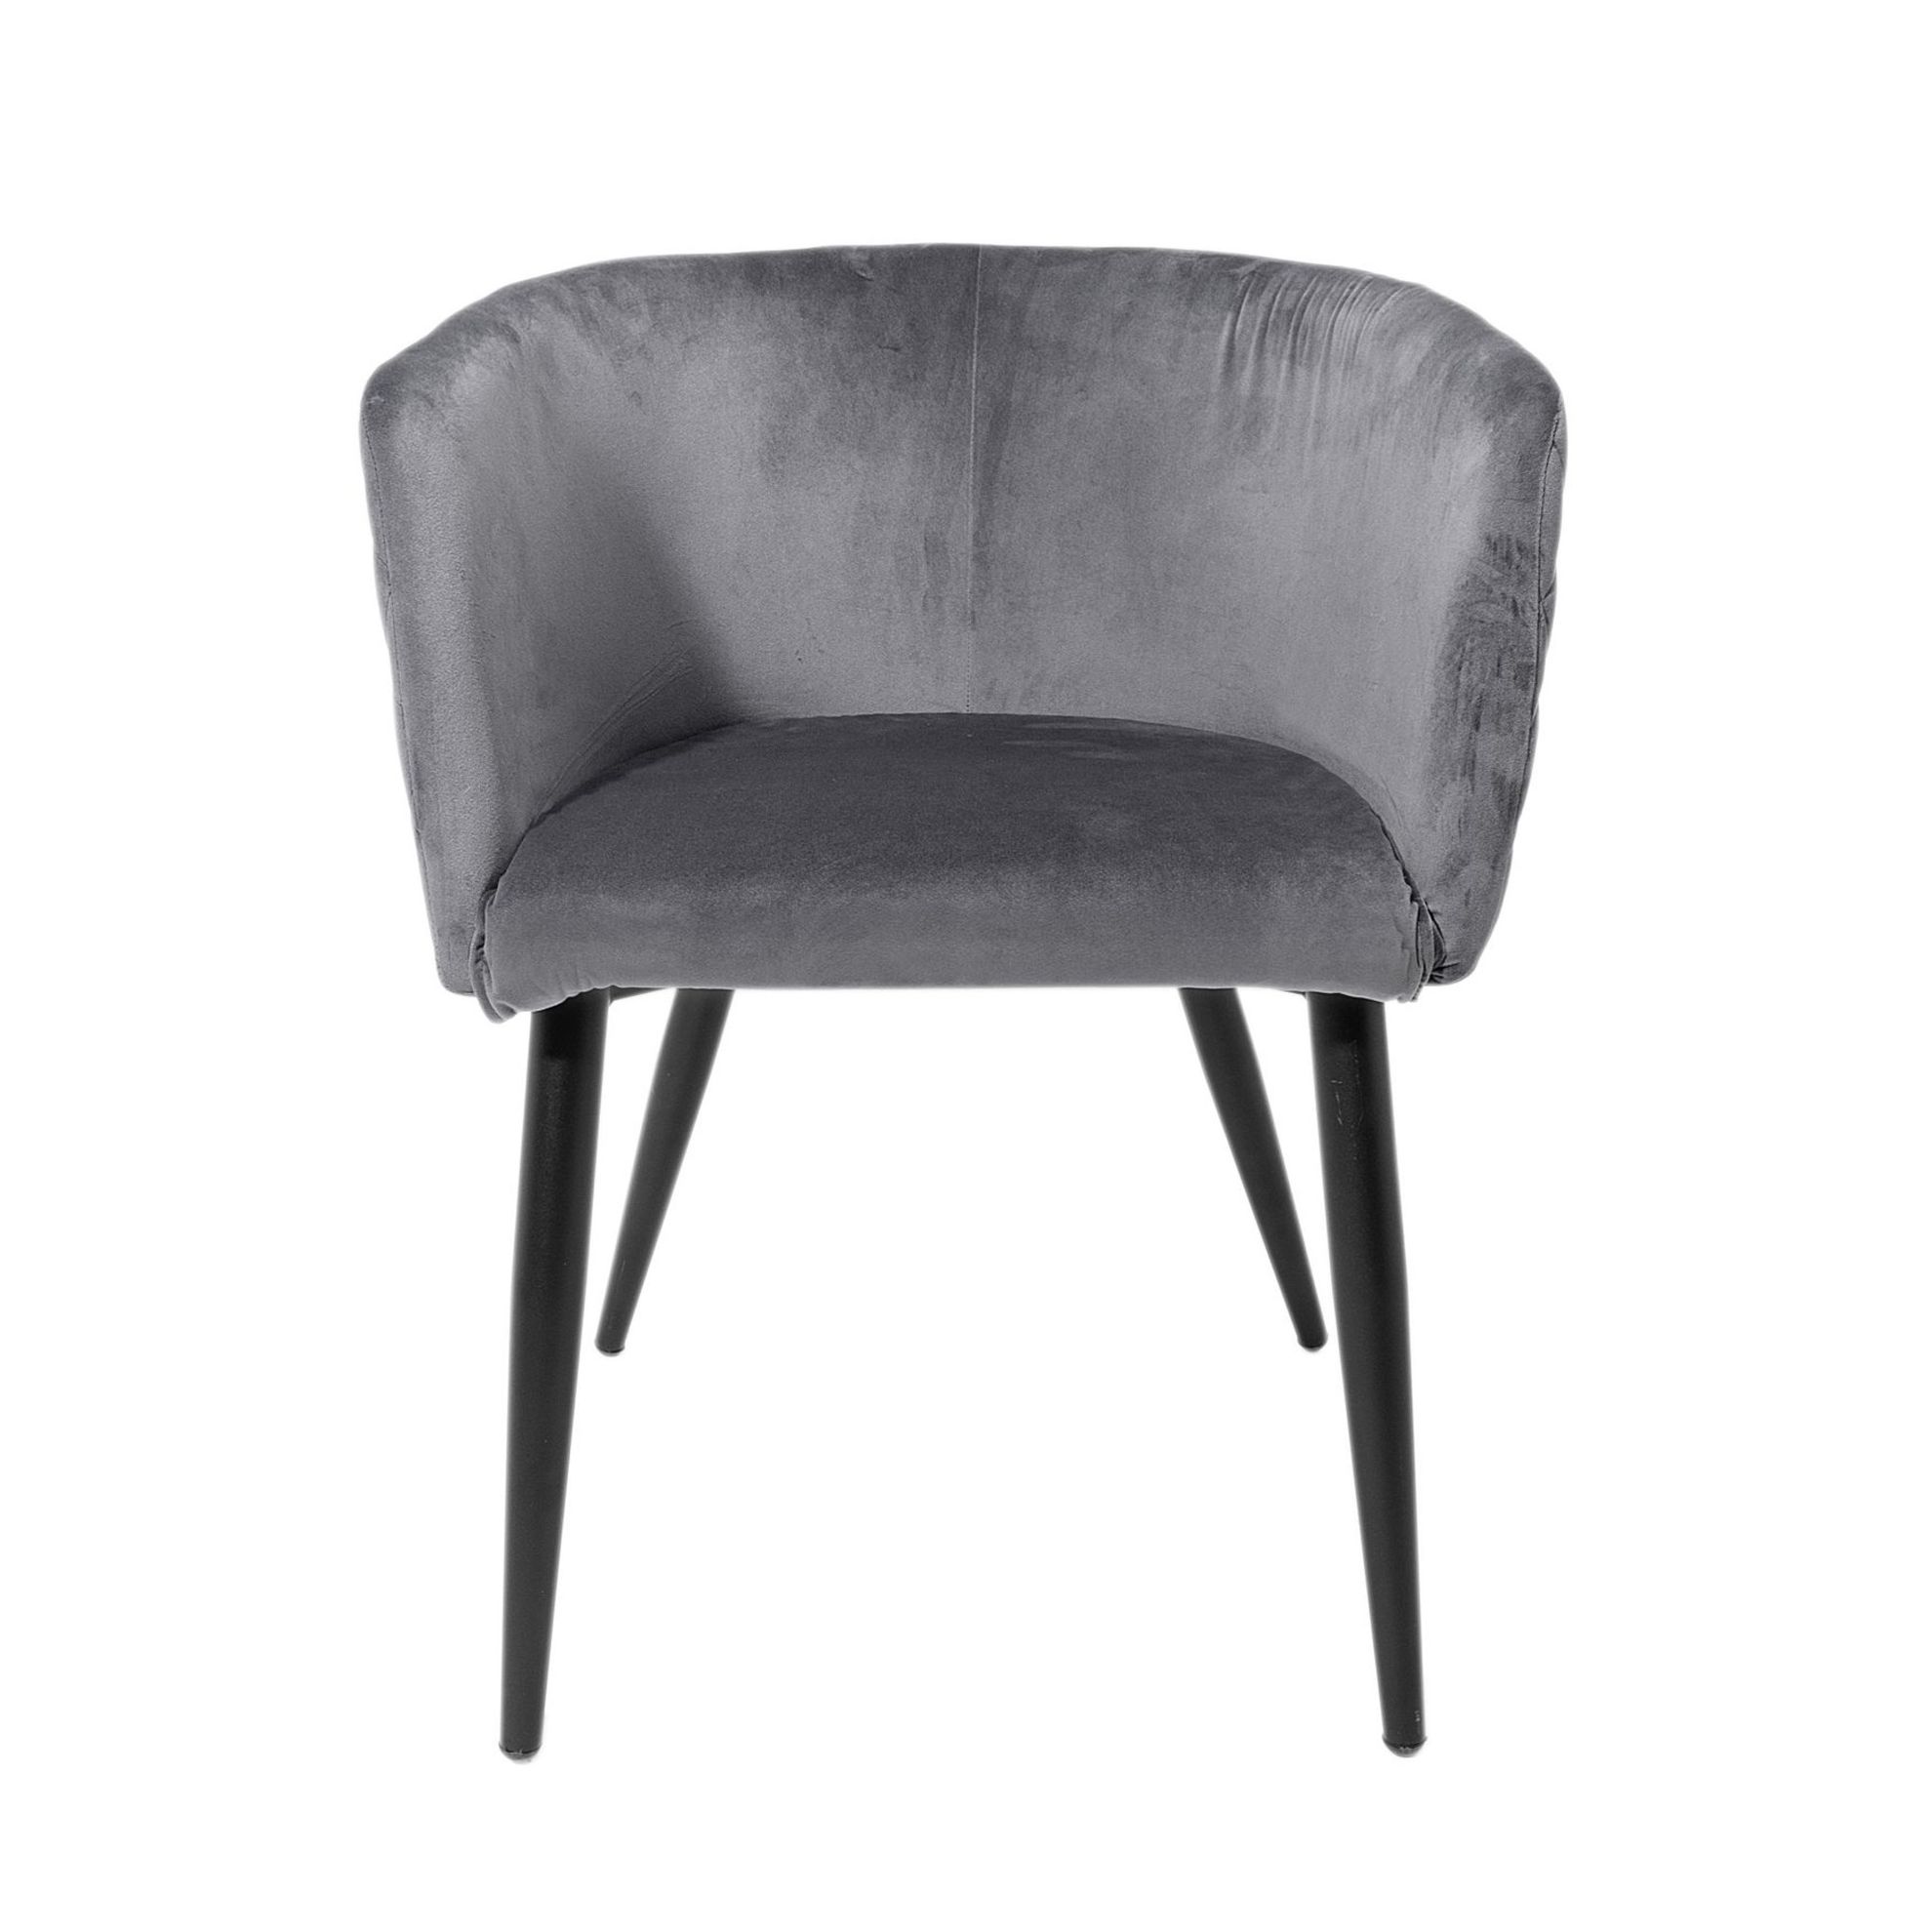 Stuhl mit Armlehne Farbe: Grau jetzt bei Weltbild.at bestellen